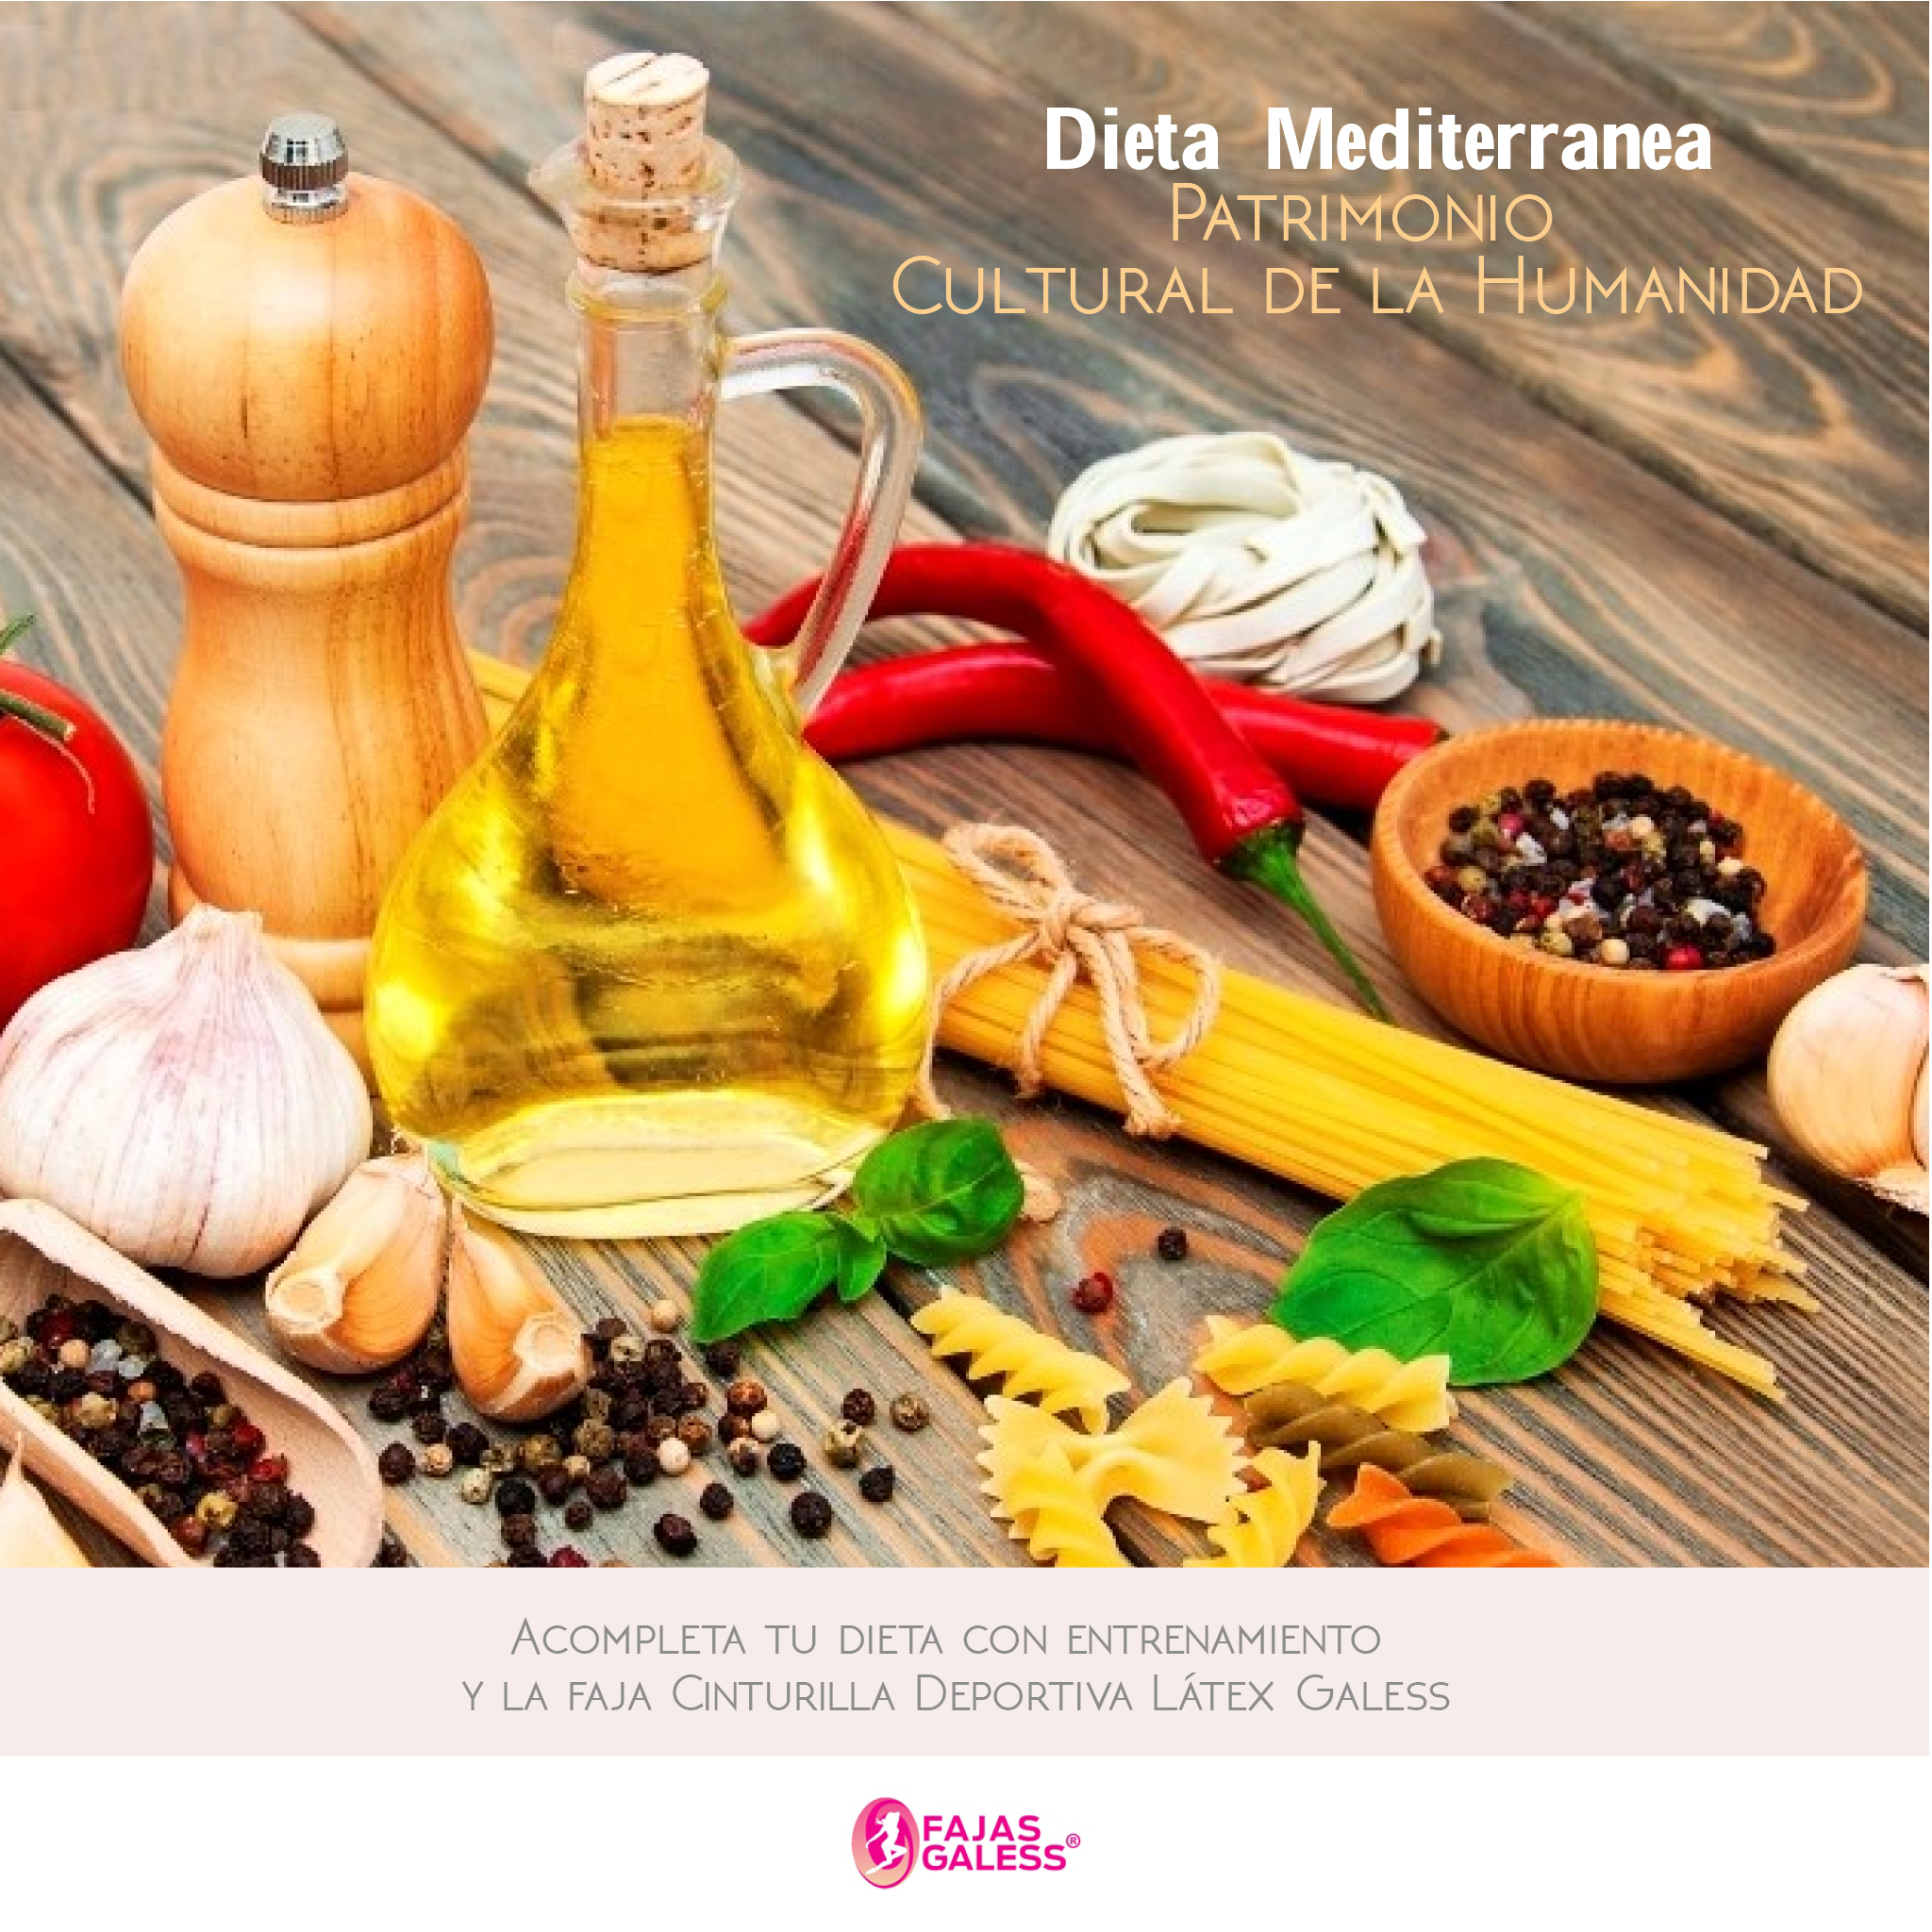 Dieta Mediterránea declarada Patrimonio Cultural de la Humanidad